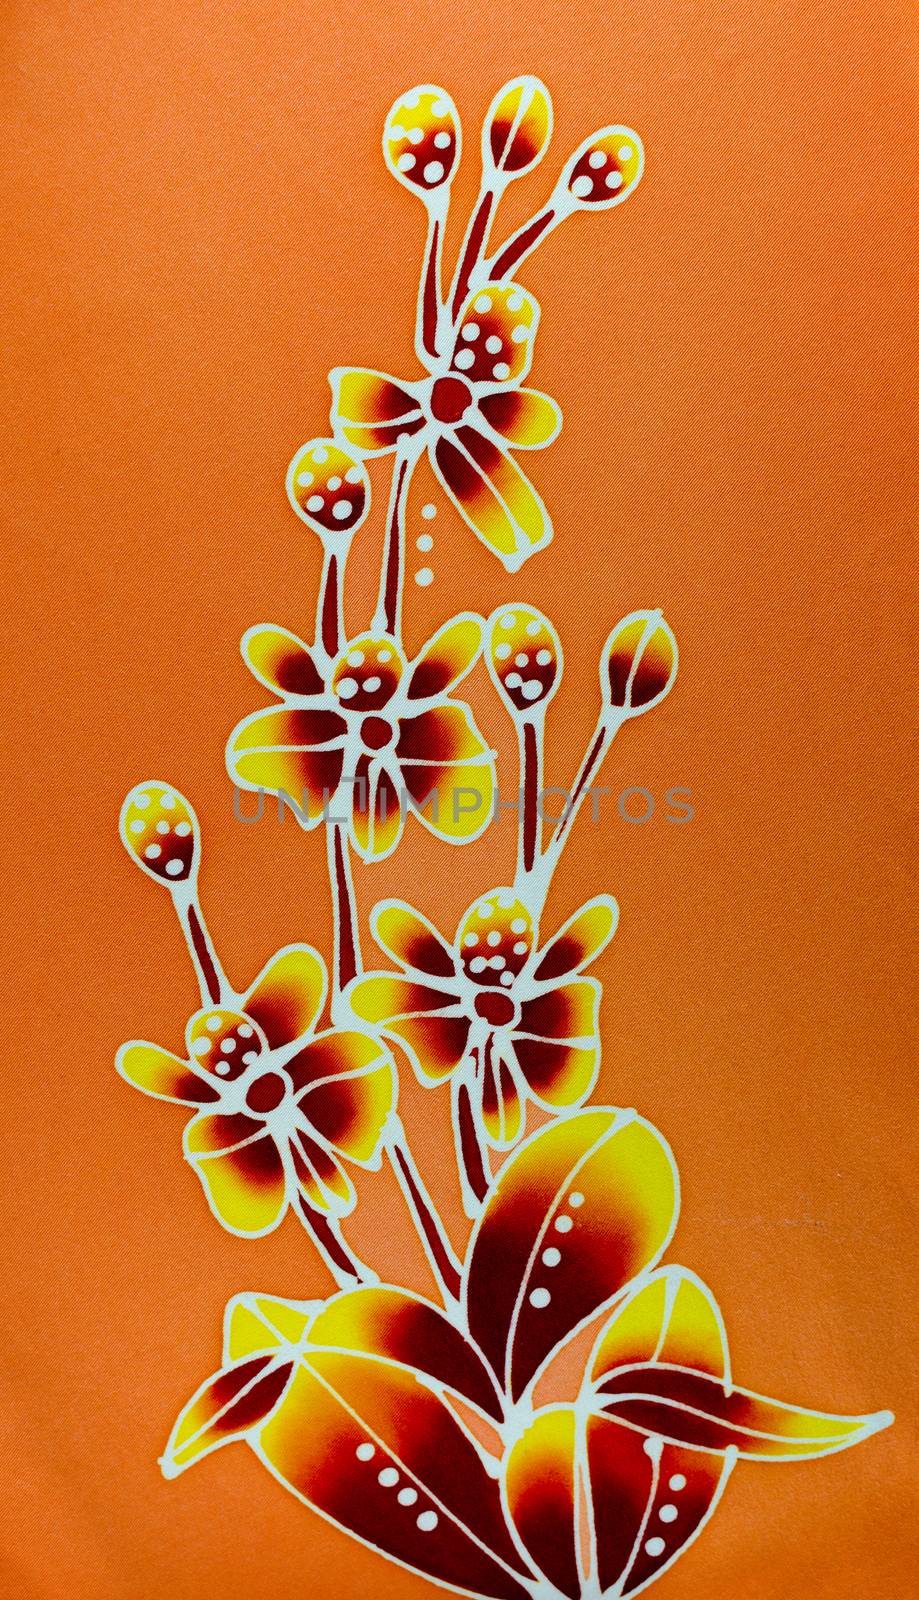 Flowers Design on batik. by nop16